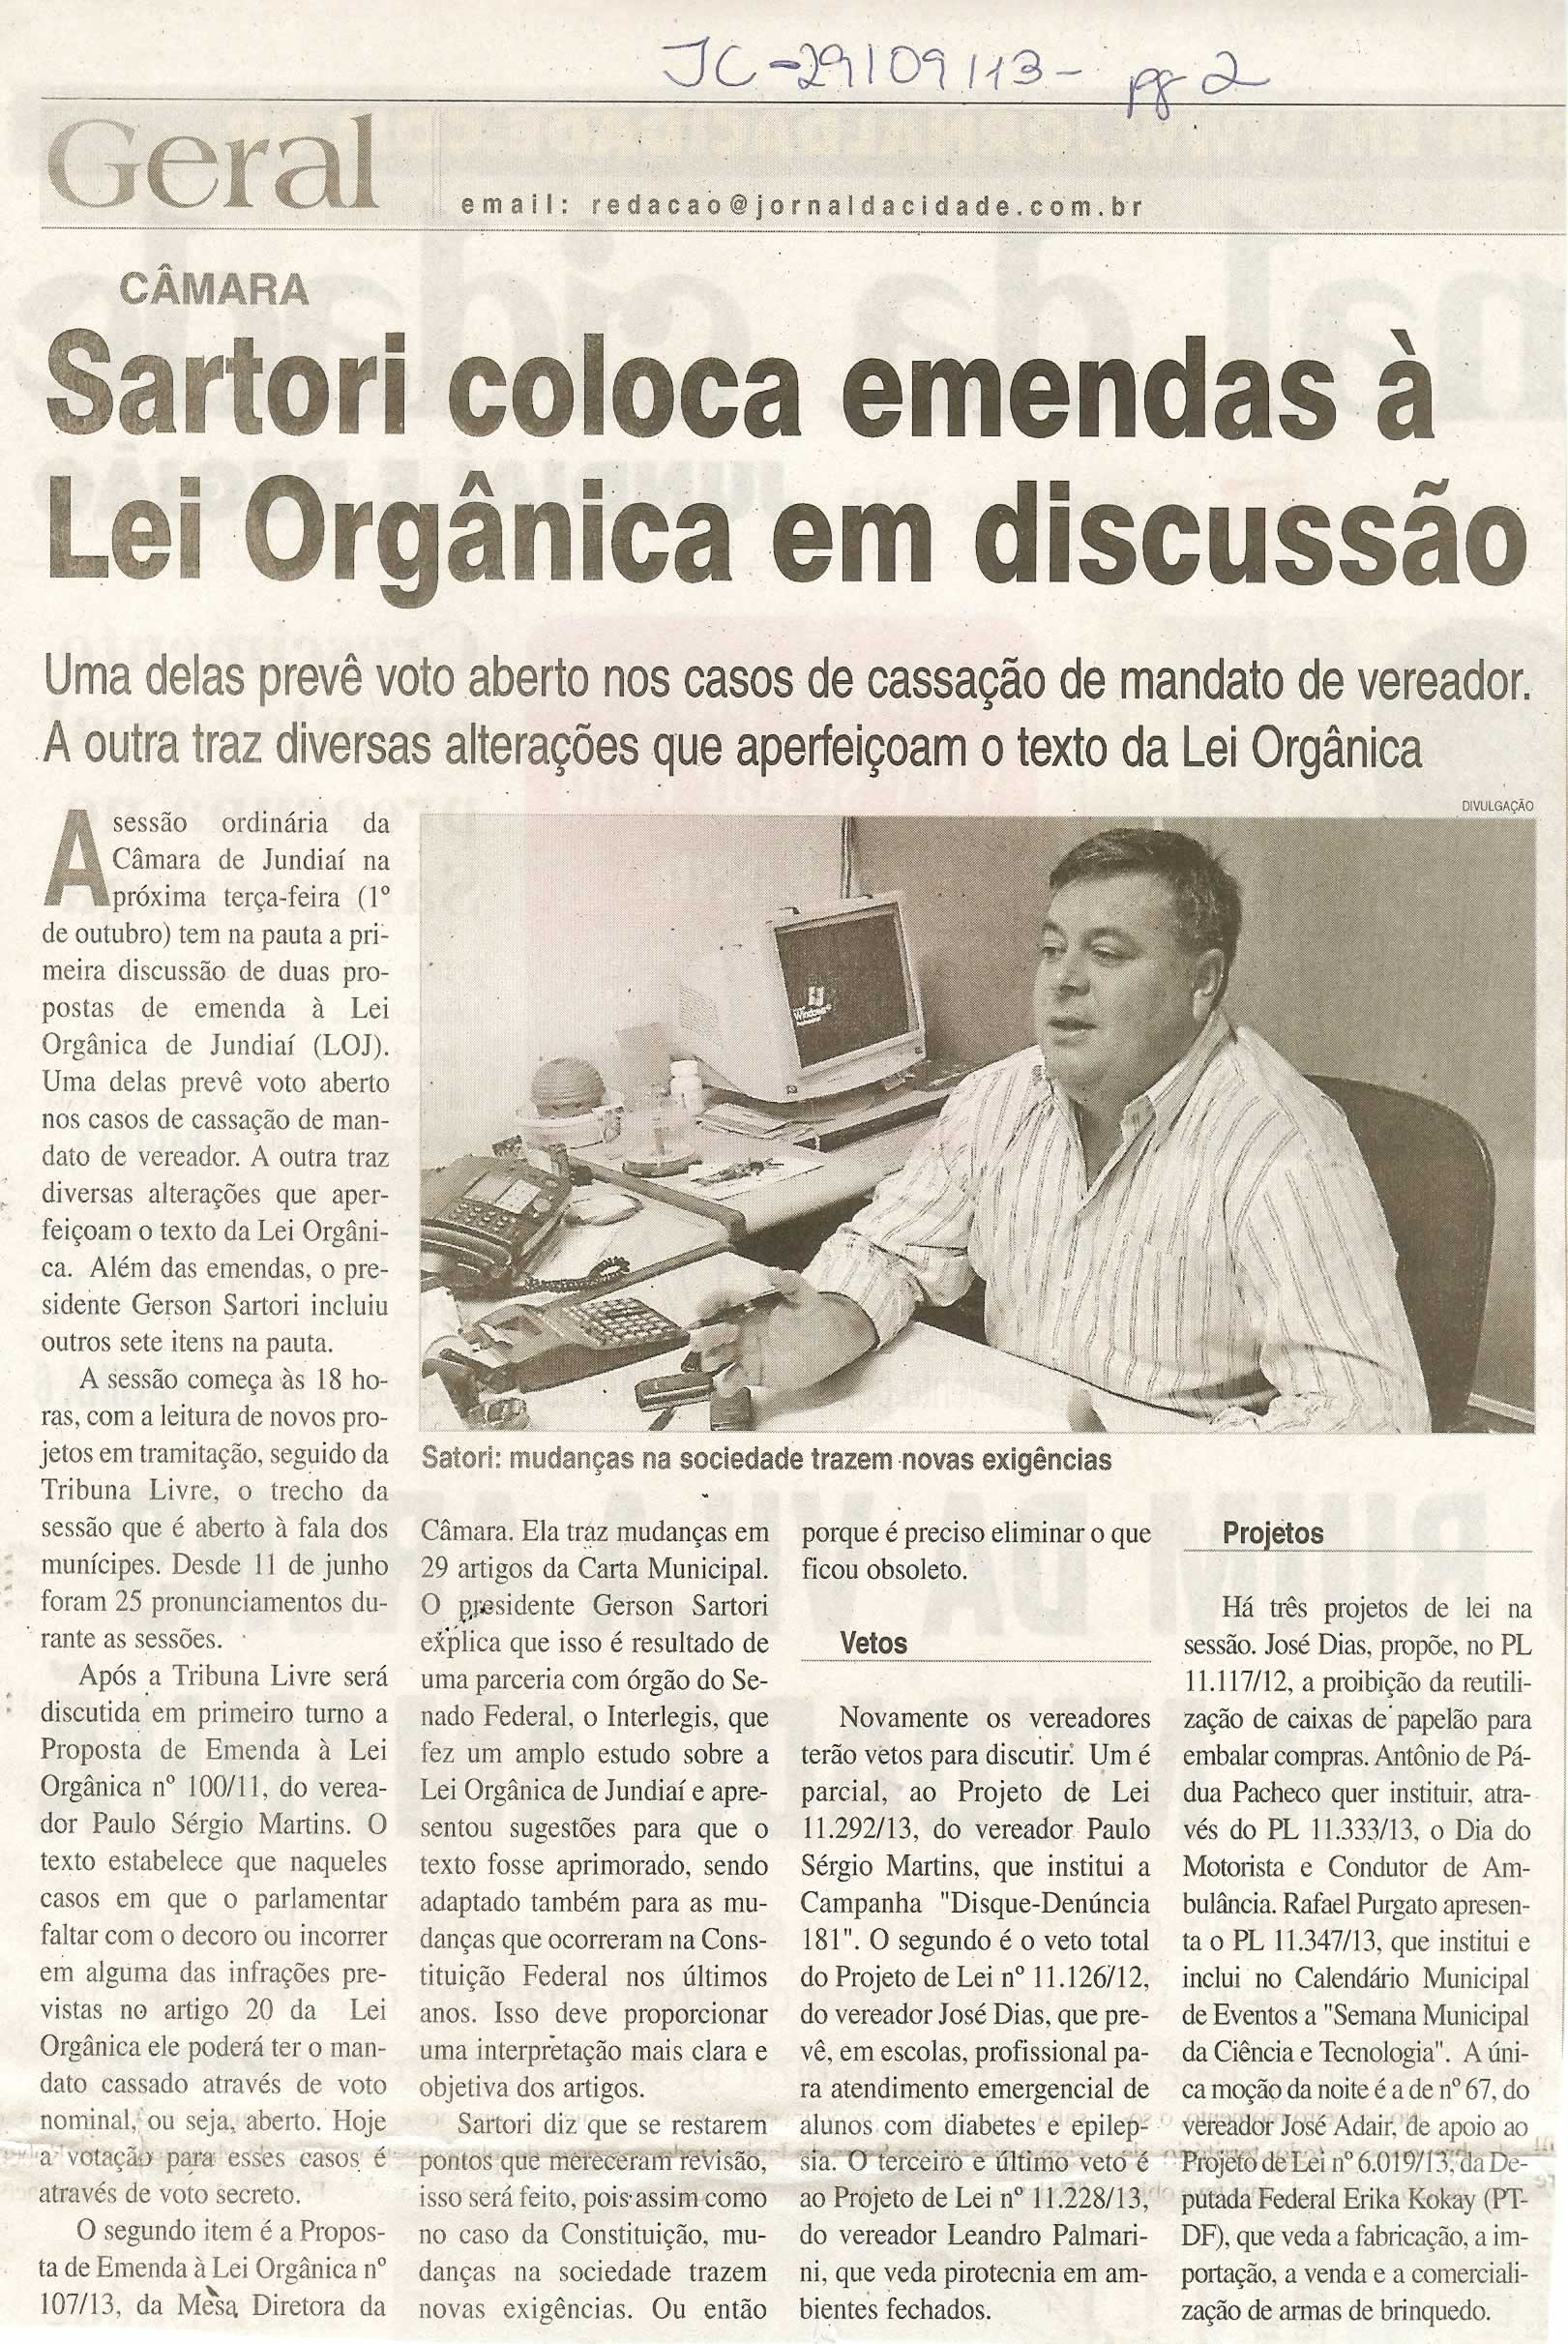 JC - 29/09/13 - pagina 2 - Sartori coloca emendas à lei orgânica em discussão - 